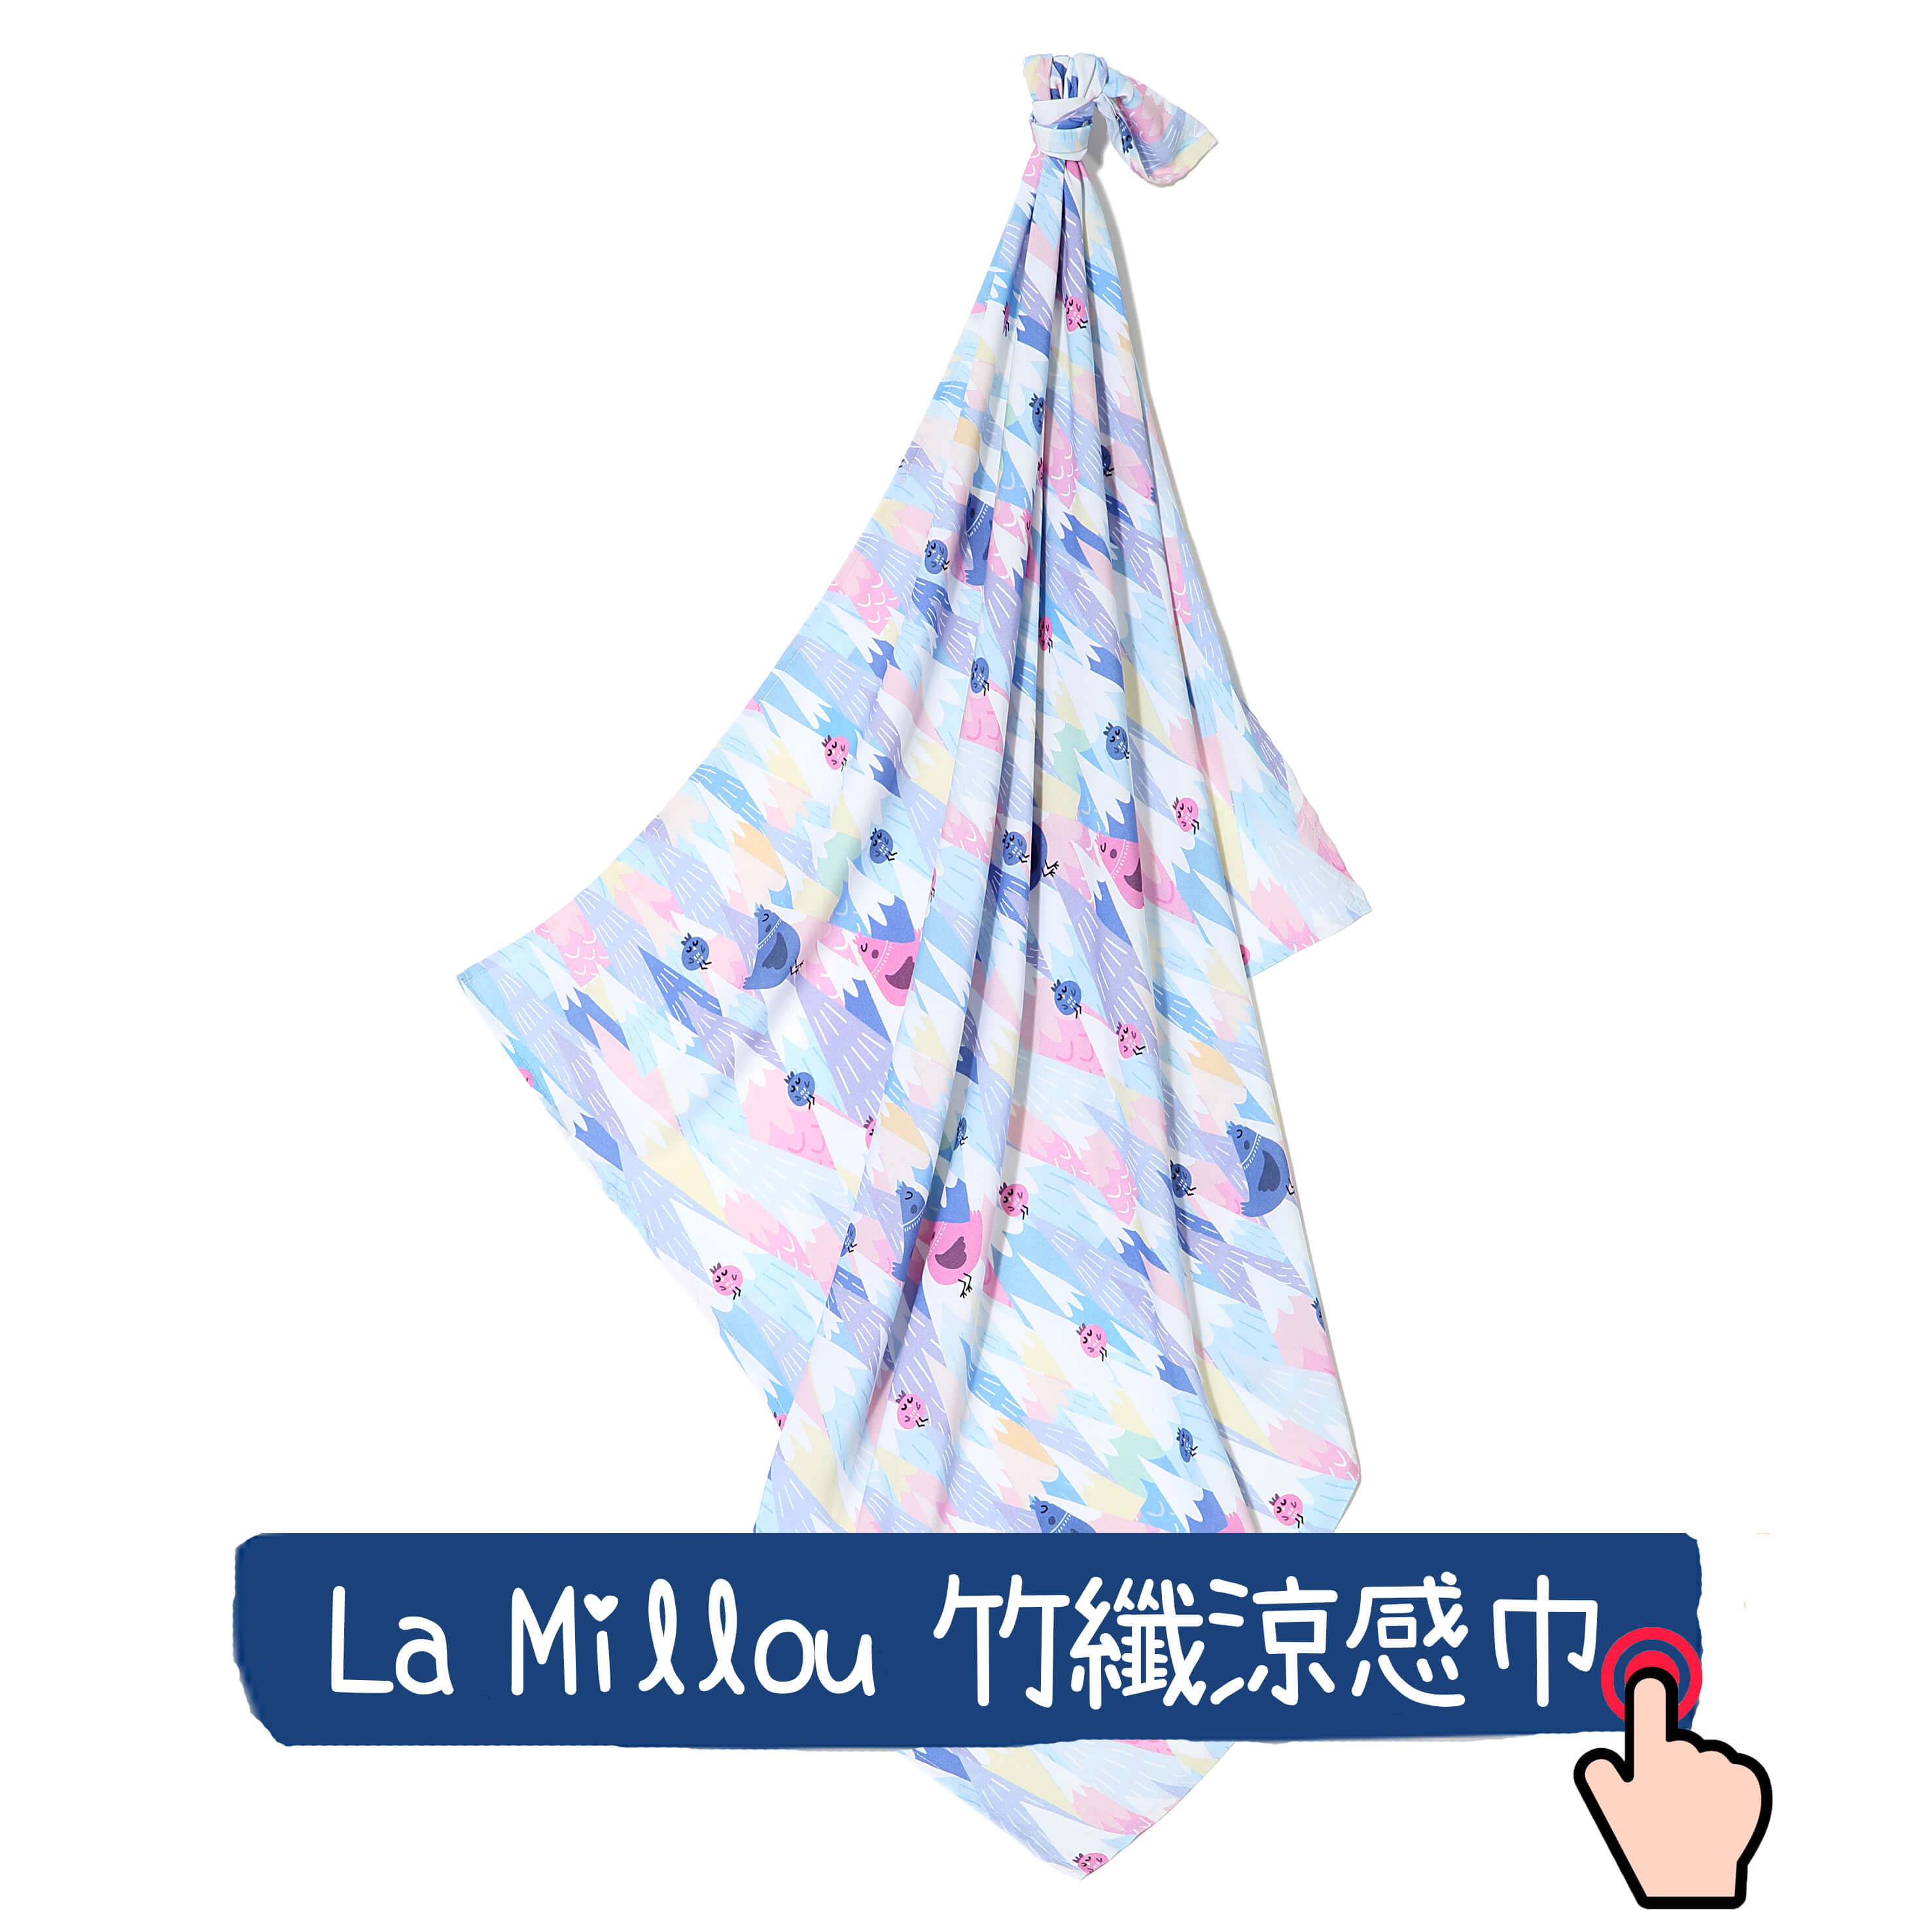 嬰兒包巾推薦La Millou涼感巾